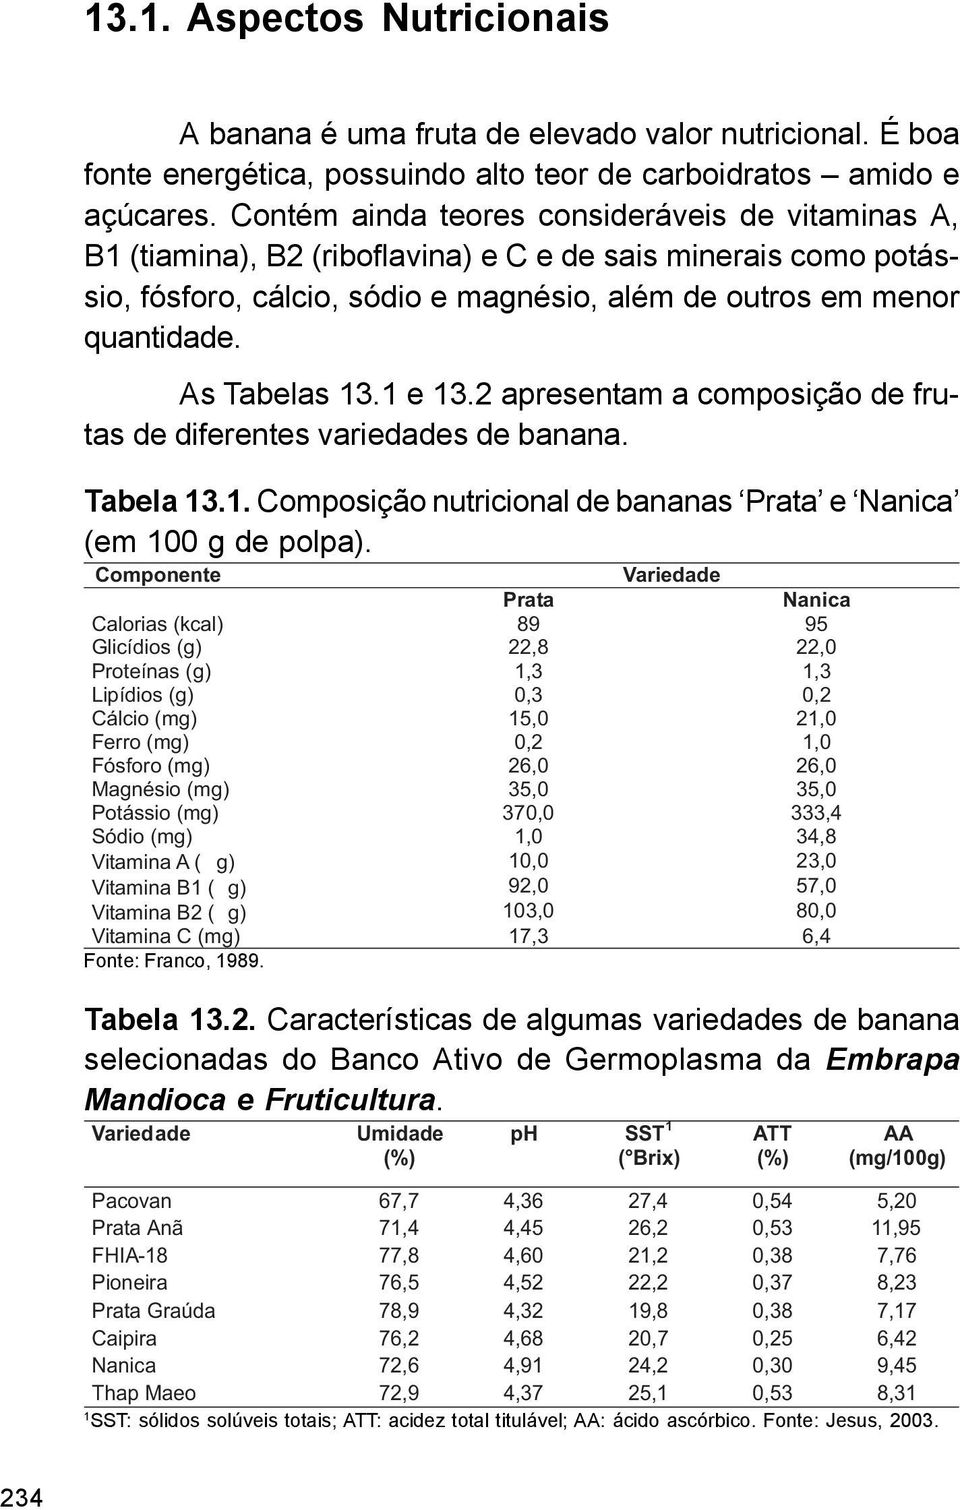 As Tabelas 13.1 e 13.2 apresentam a composição de frutas de diferentes variedades de banana. Tabela 13.1. Composição nutricional de bananas Prata e Nanica (em 100 g de polpa).